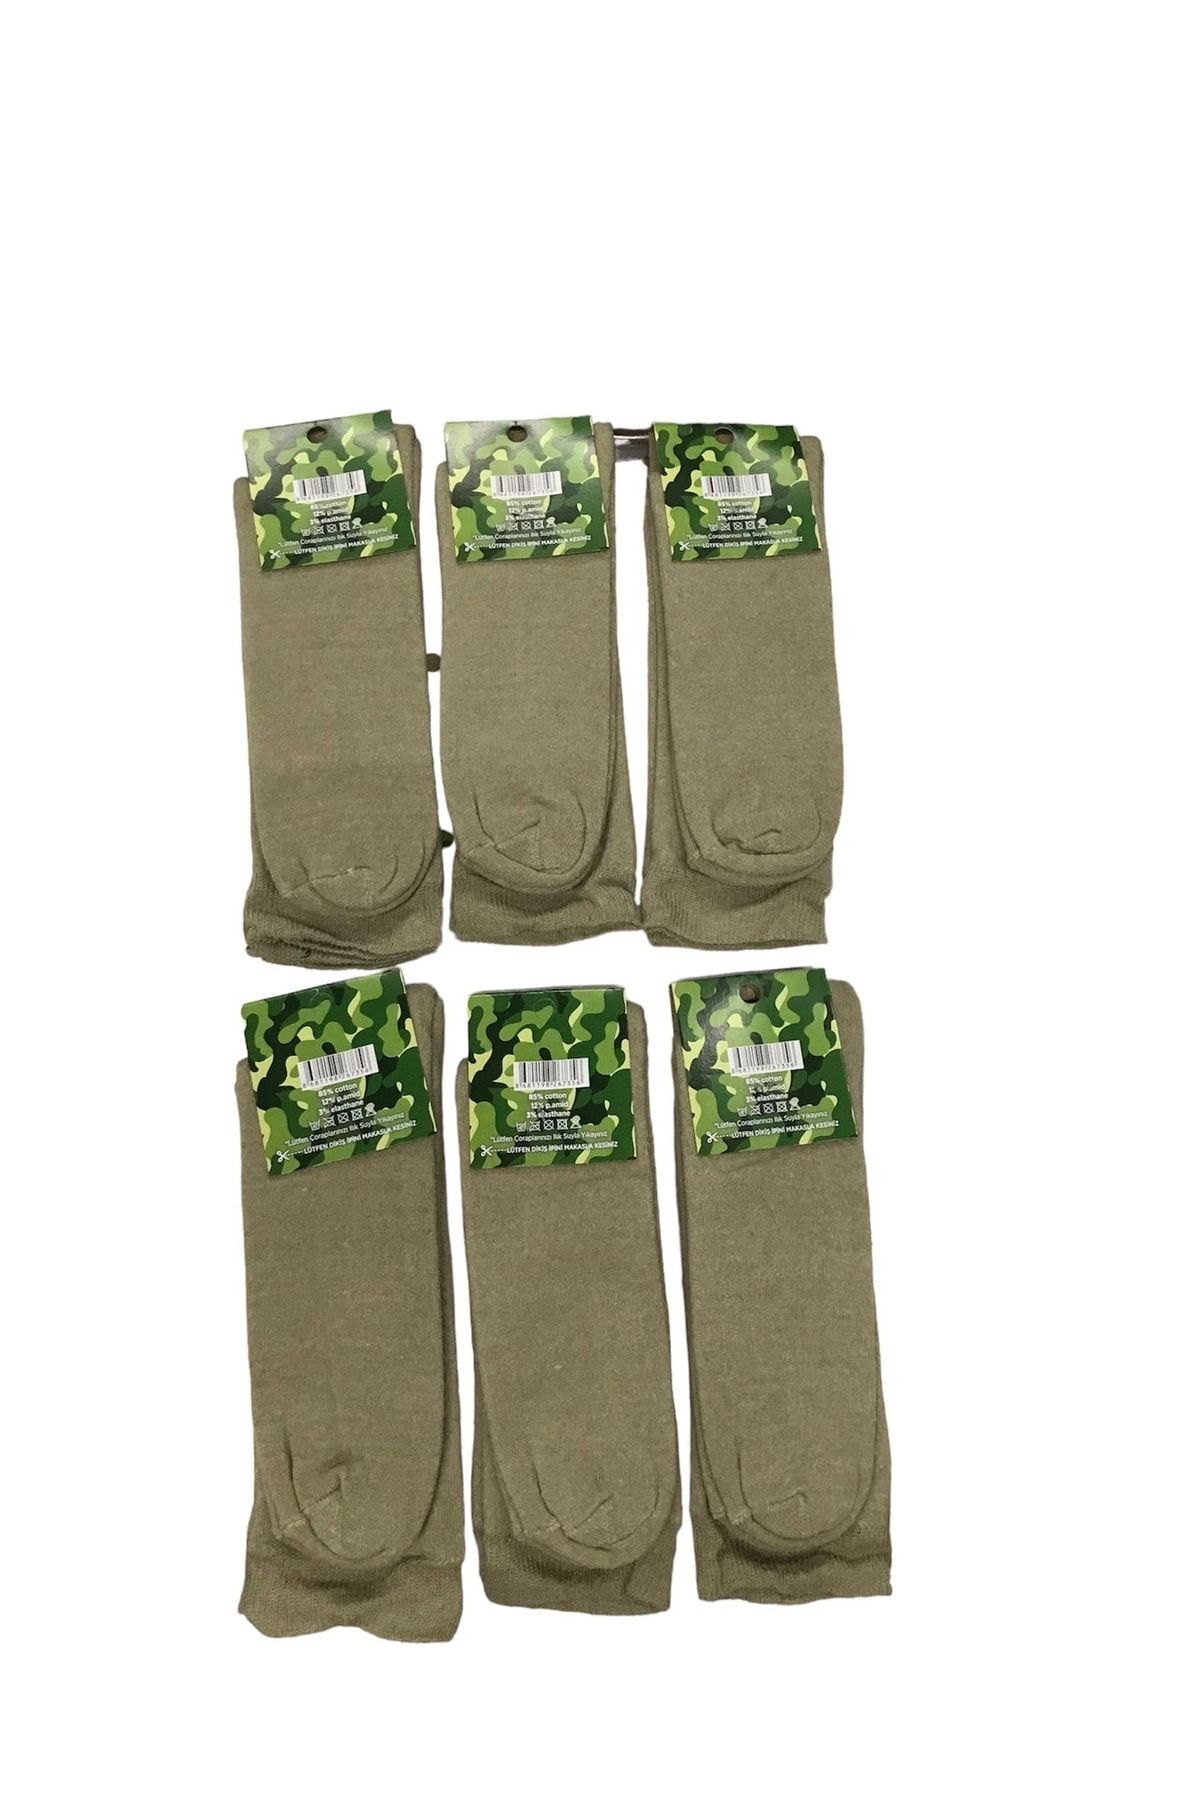 Açıkalın askeri Malzeme Askeri Kışlık 6'lı Havlu Çorap